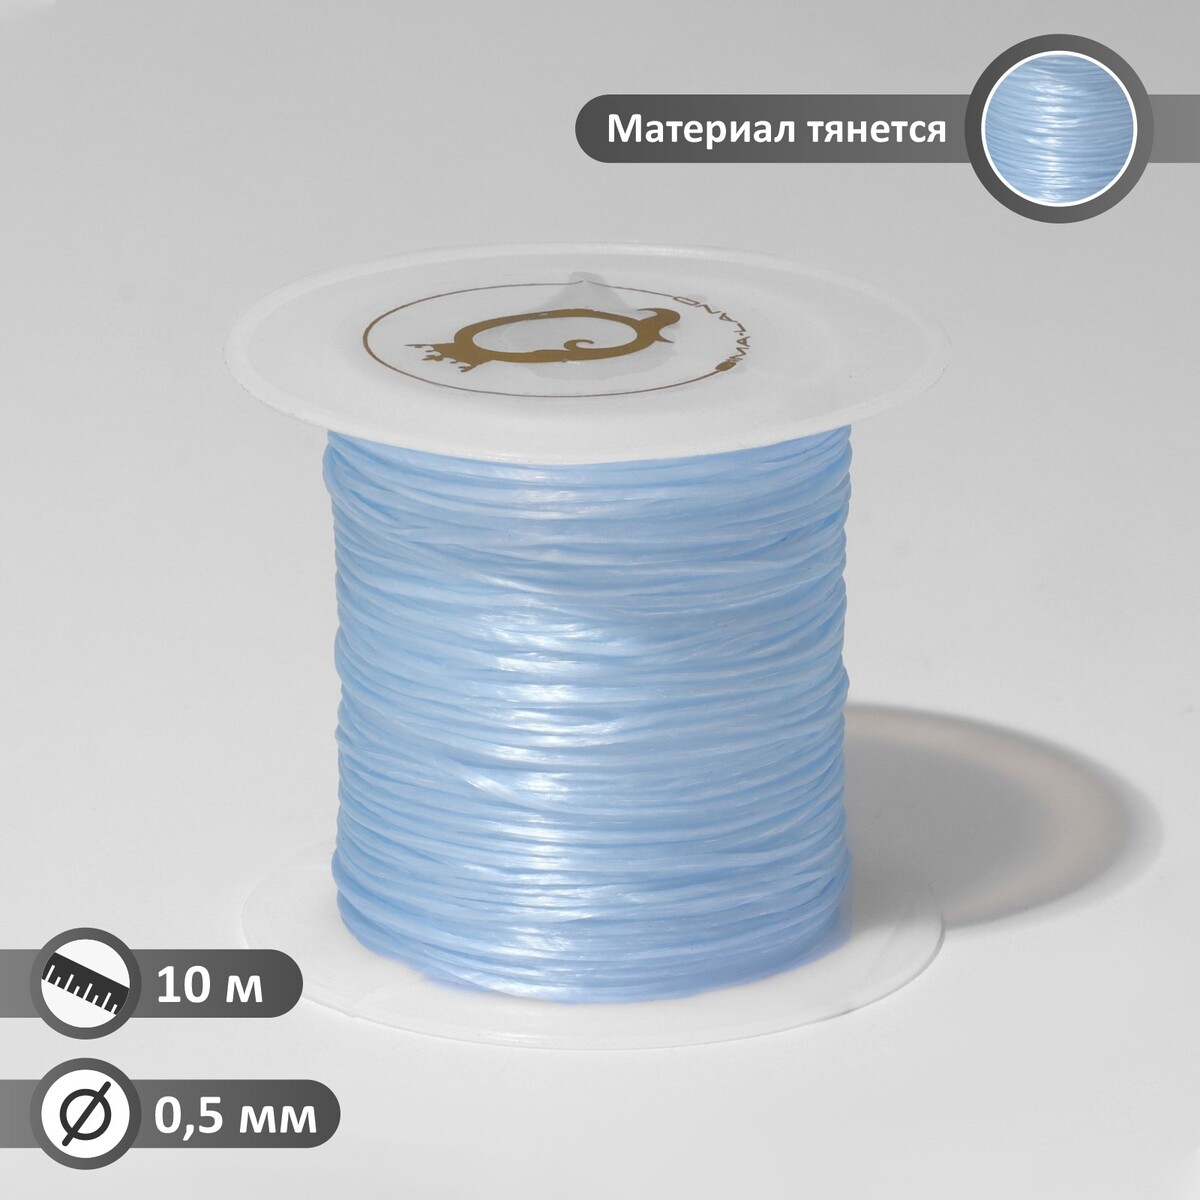 Нить силиконовая (резинка) d=0,5 мм, l=10 м (прочность 2250 денье), цвет голубой нить силиконовая резинка d 0 5мм l 50м прочность 2250 денье синий